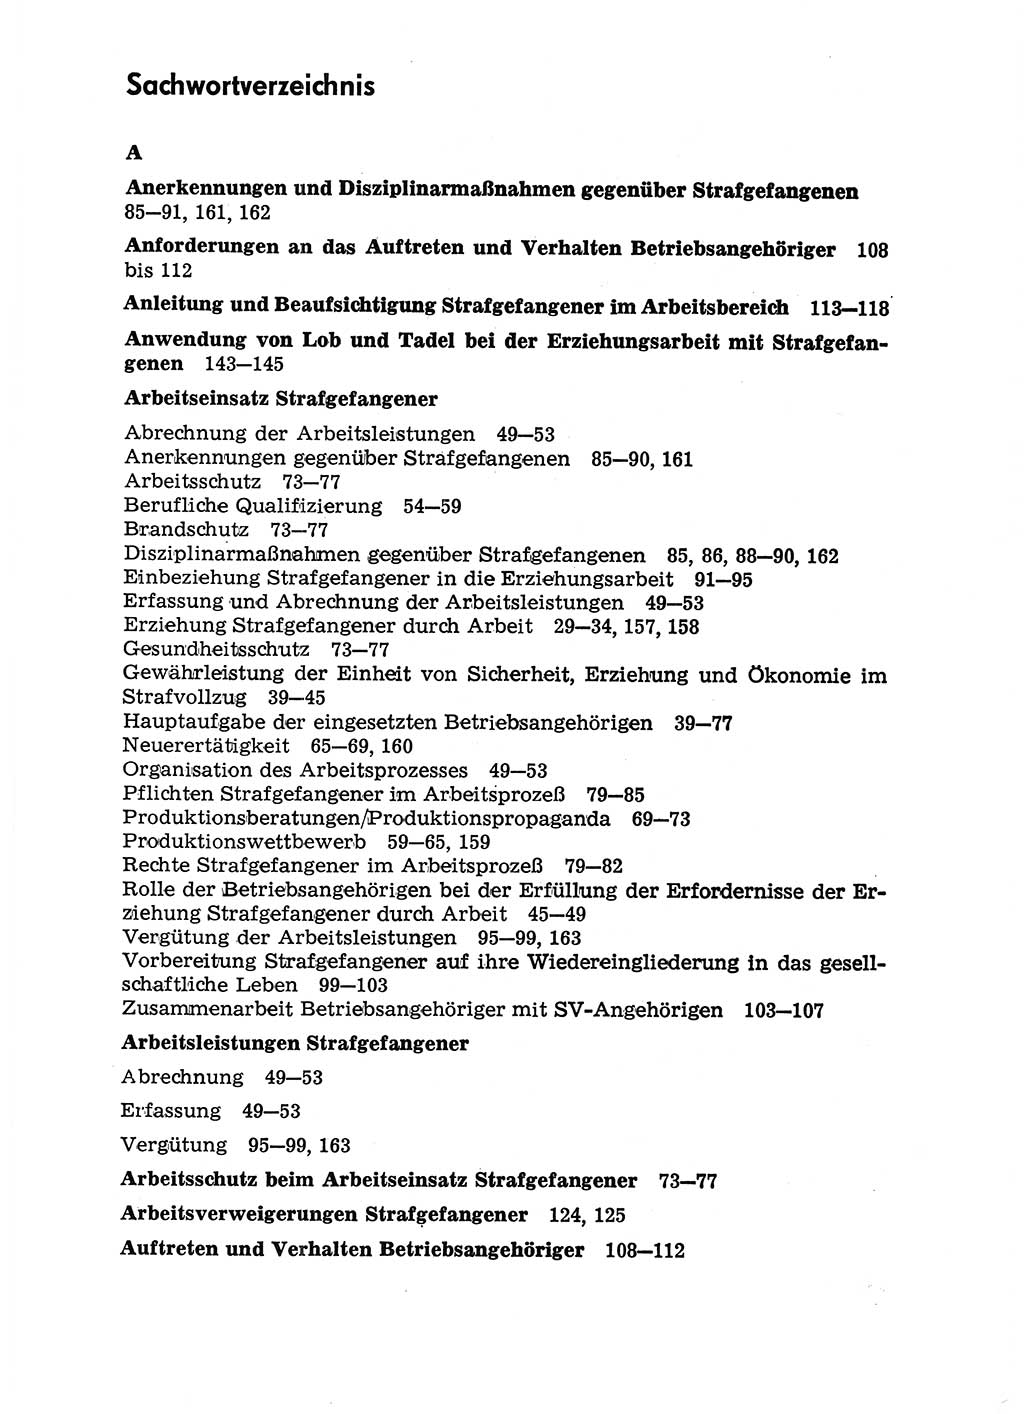 Handbuch für Betriebsangehörige, Abteilung Strafvollzug (SV) [Ministerium des Innern (MdI) Deutsche Demokratische Republik (DDR)] 1981, Seite 167 (Hb. BA Abt. SV MdI DDR 1981, S. 167)